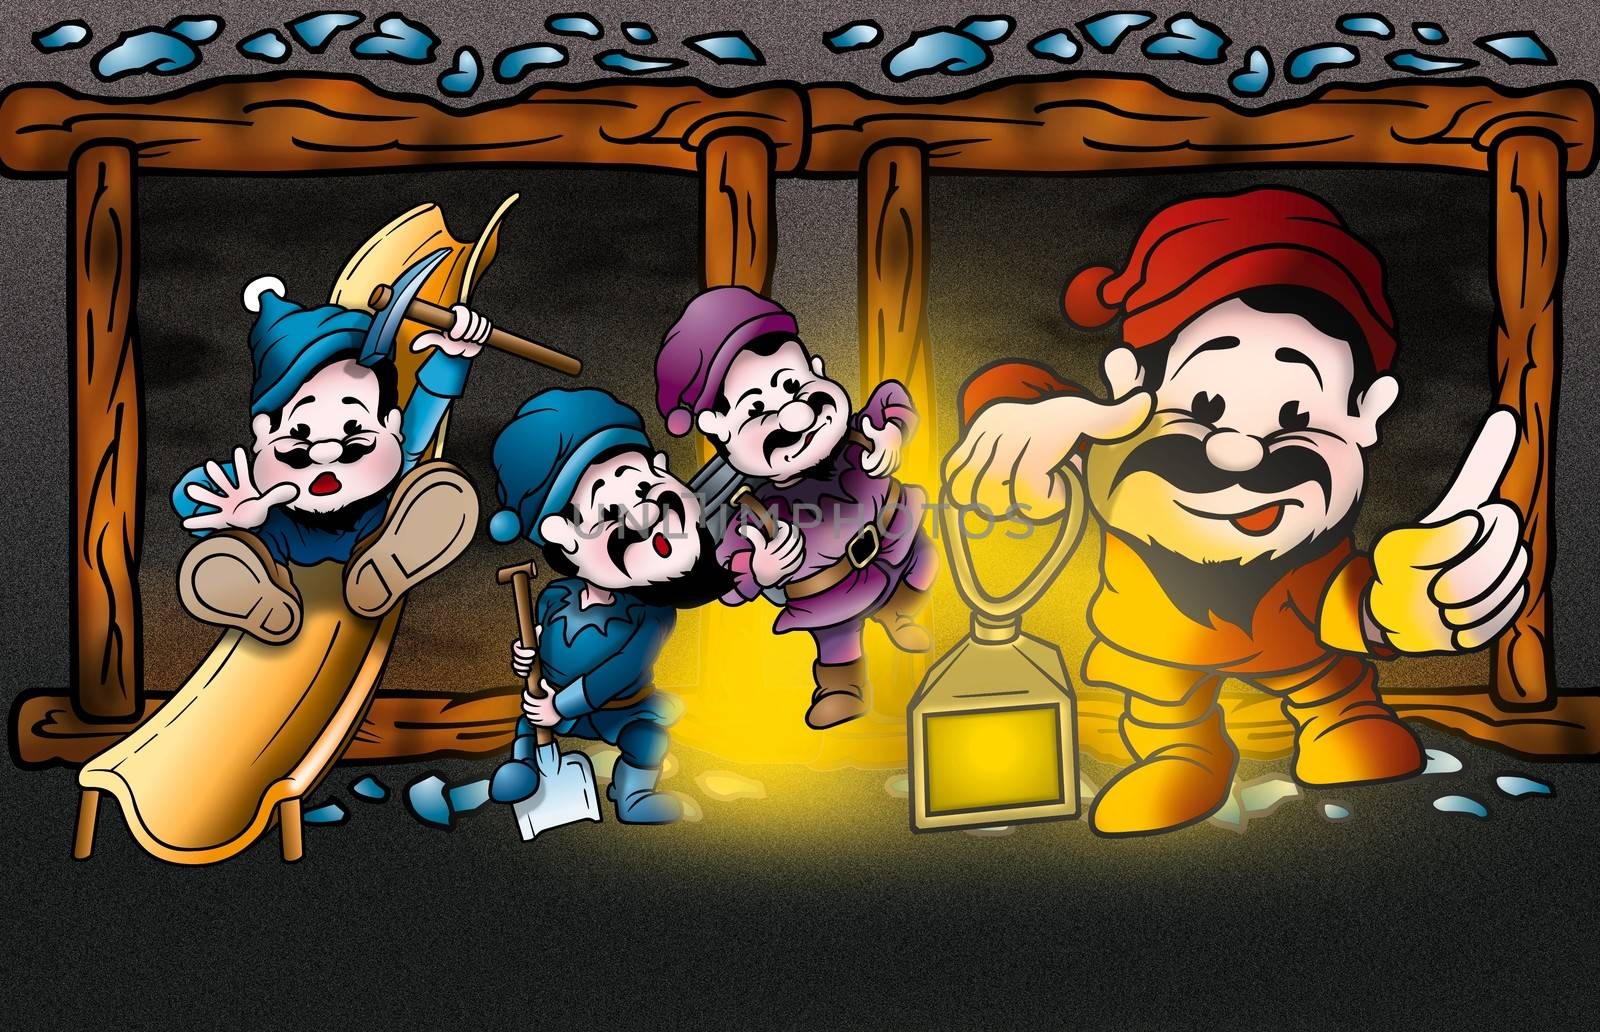 Dwarfs by illustratorCZ